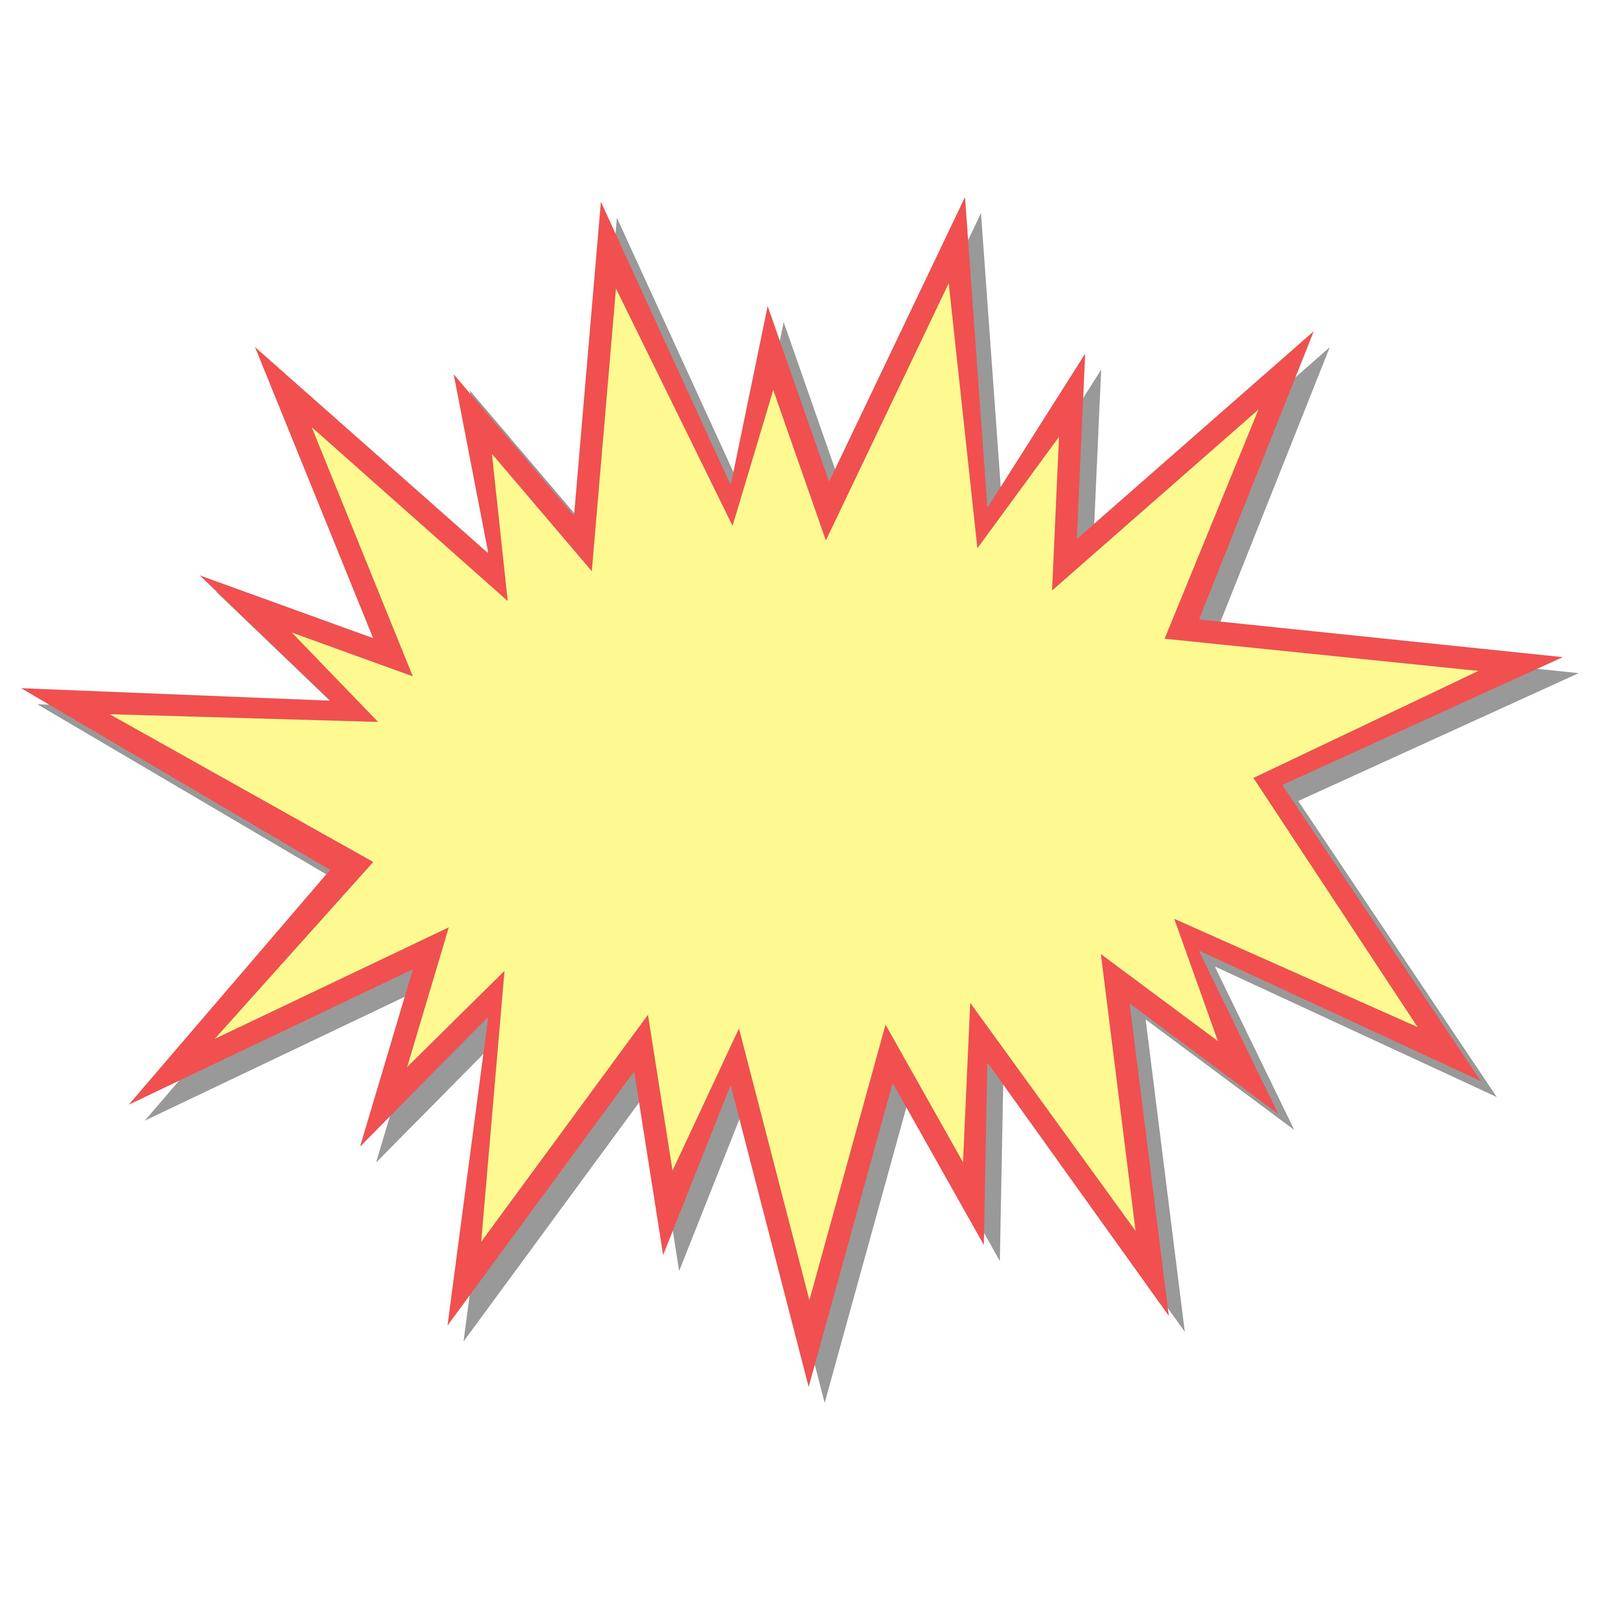 Flash starburst stars in cartoon style speech bubble icon stock illustration